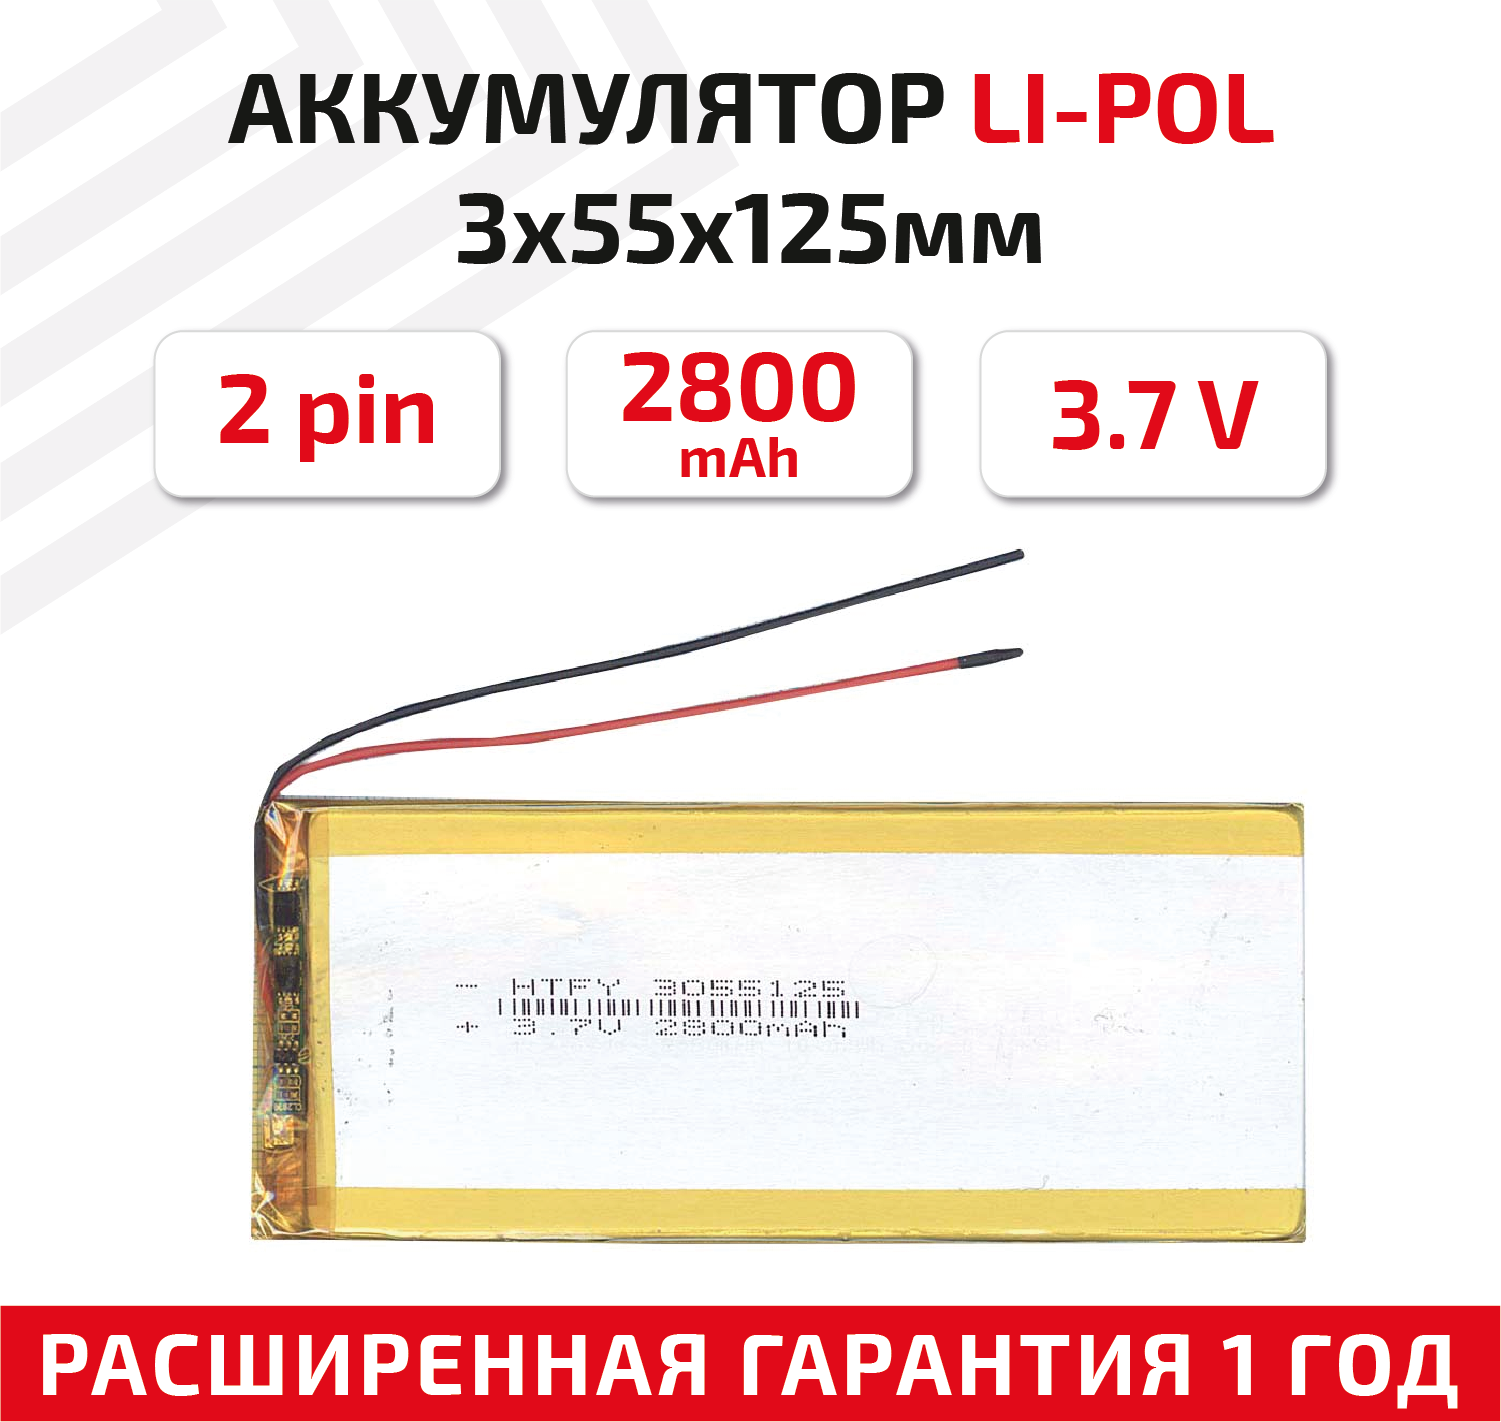 Универсальный аккумулятор (АКБ) для планшета, видеорегистратора и др, 3х55х125мм, 2800мАч, 3.7В, Li-Pol, 2pin (на 2 провода)